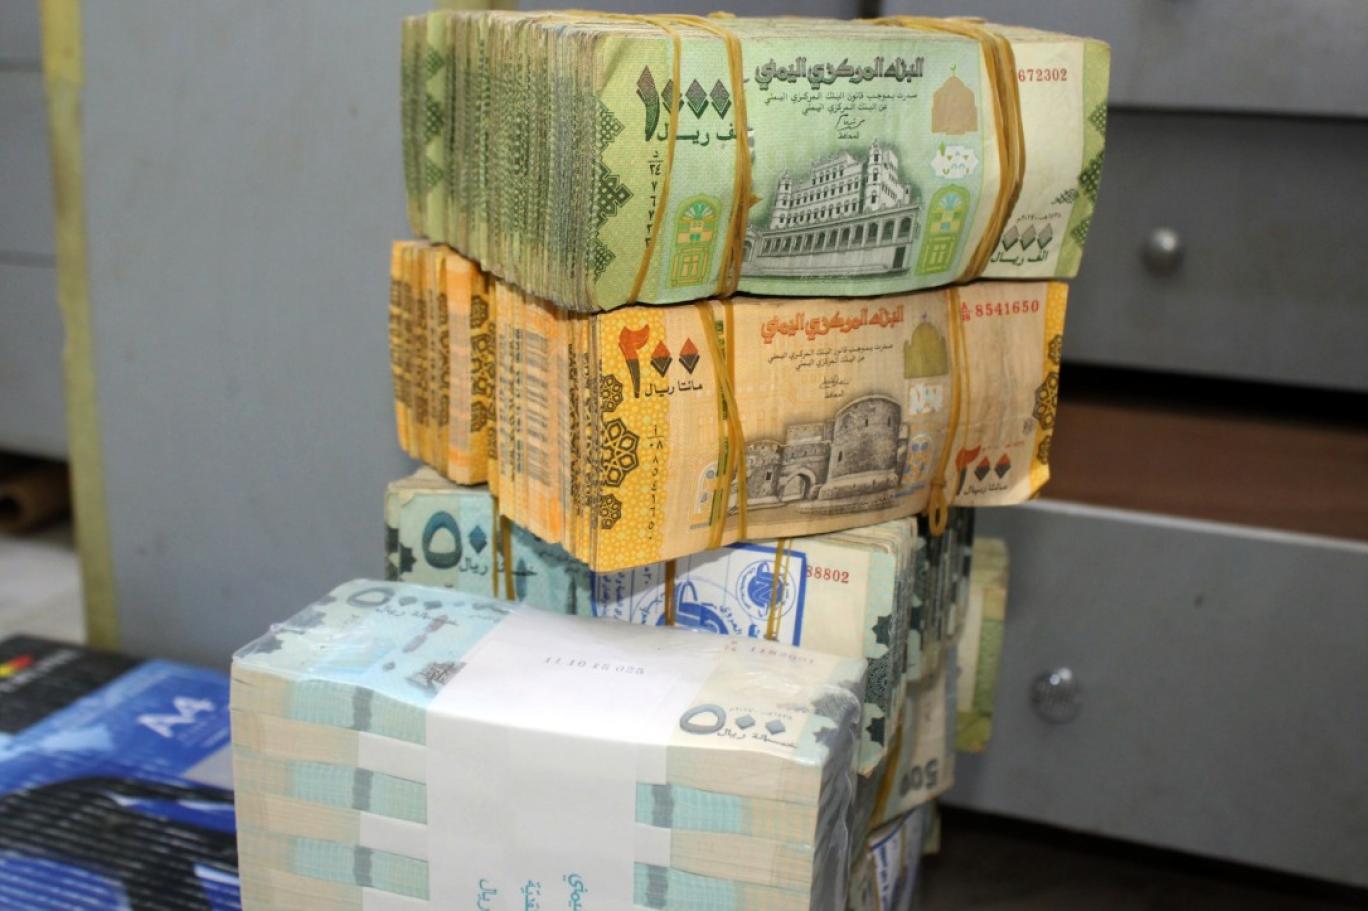 آخر تحديث مسائي لإسعار الصرف .. ارتفاع كبير للدولار والسعودي أمام الريال اليمني ليومنا هذا! 